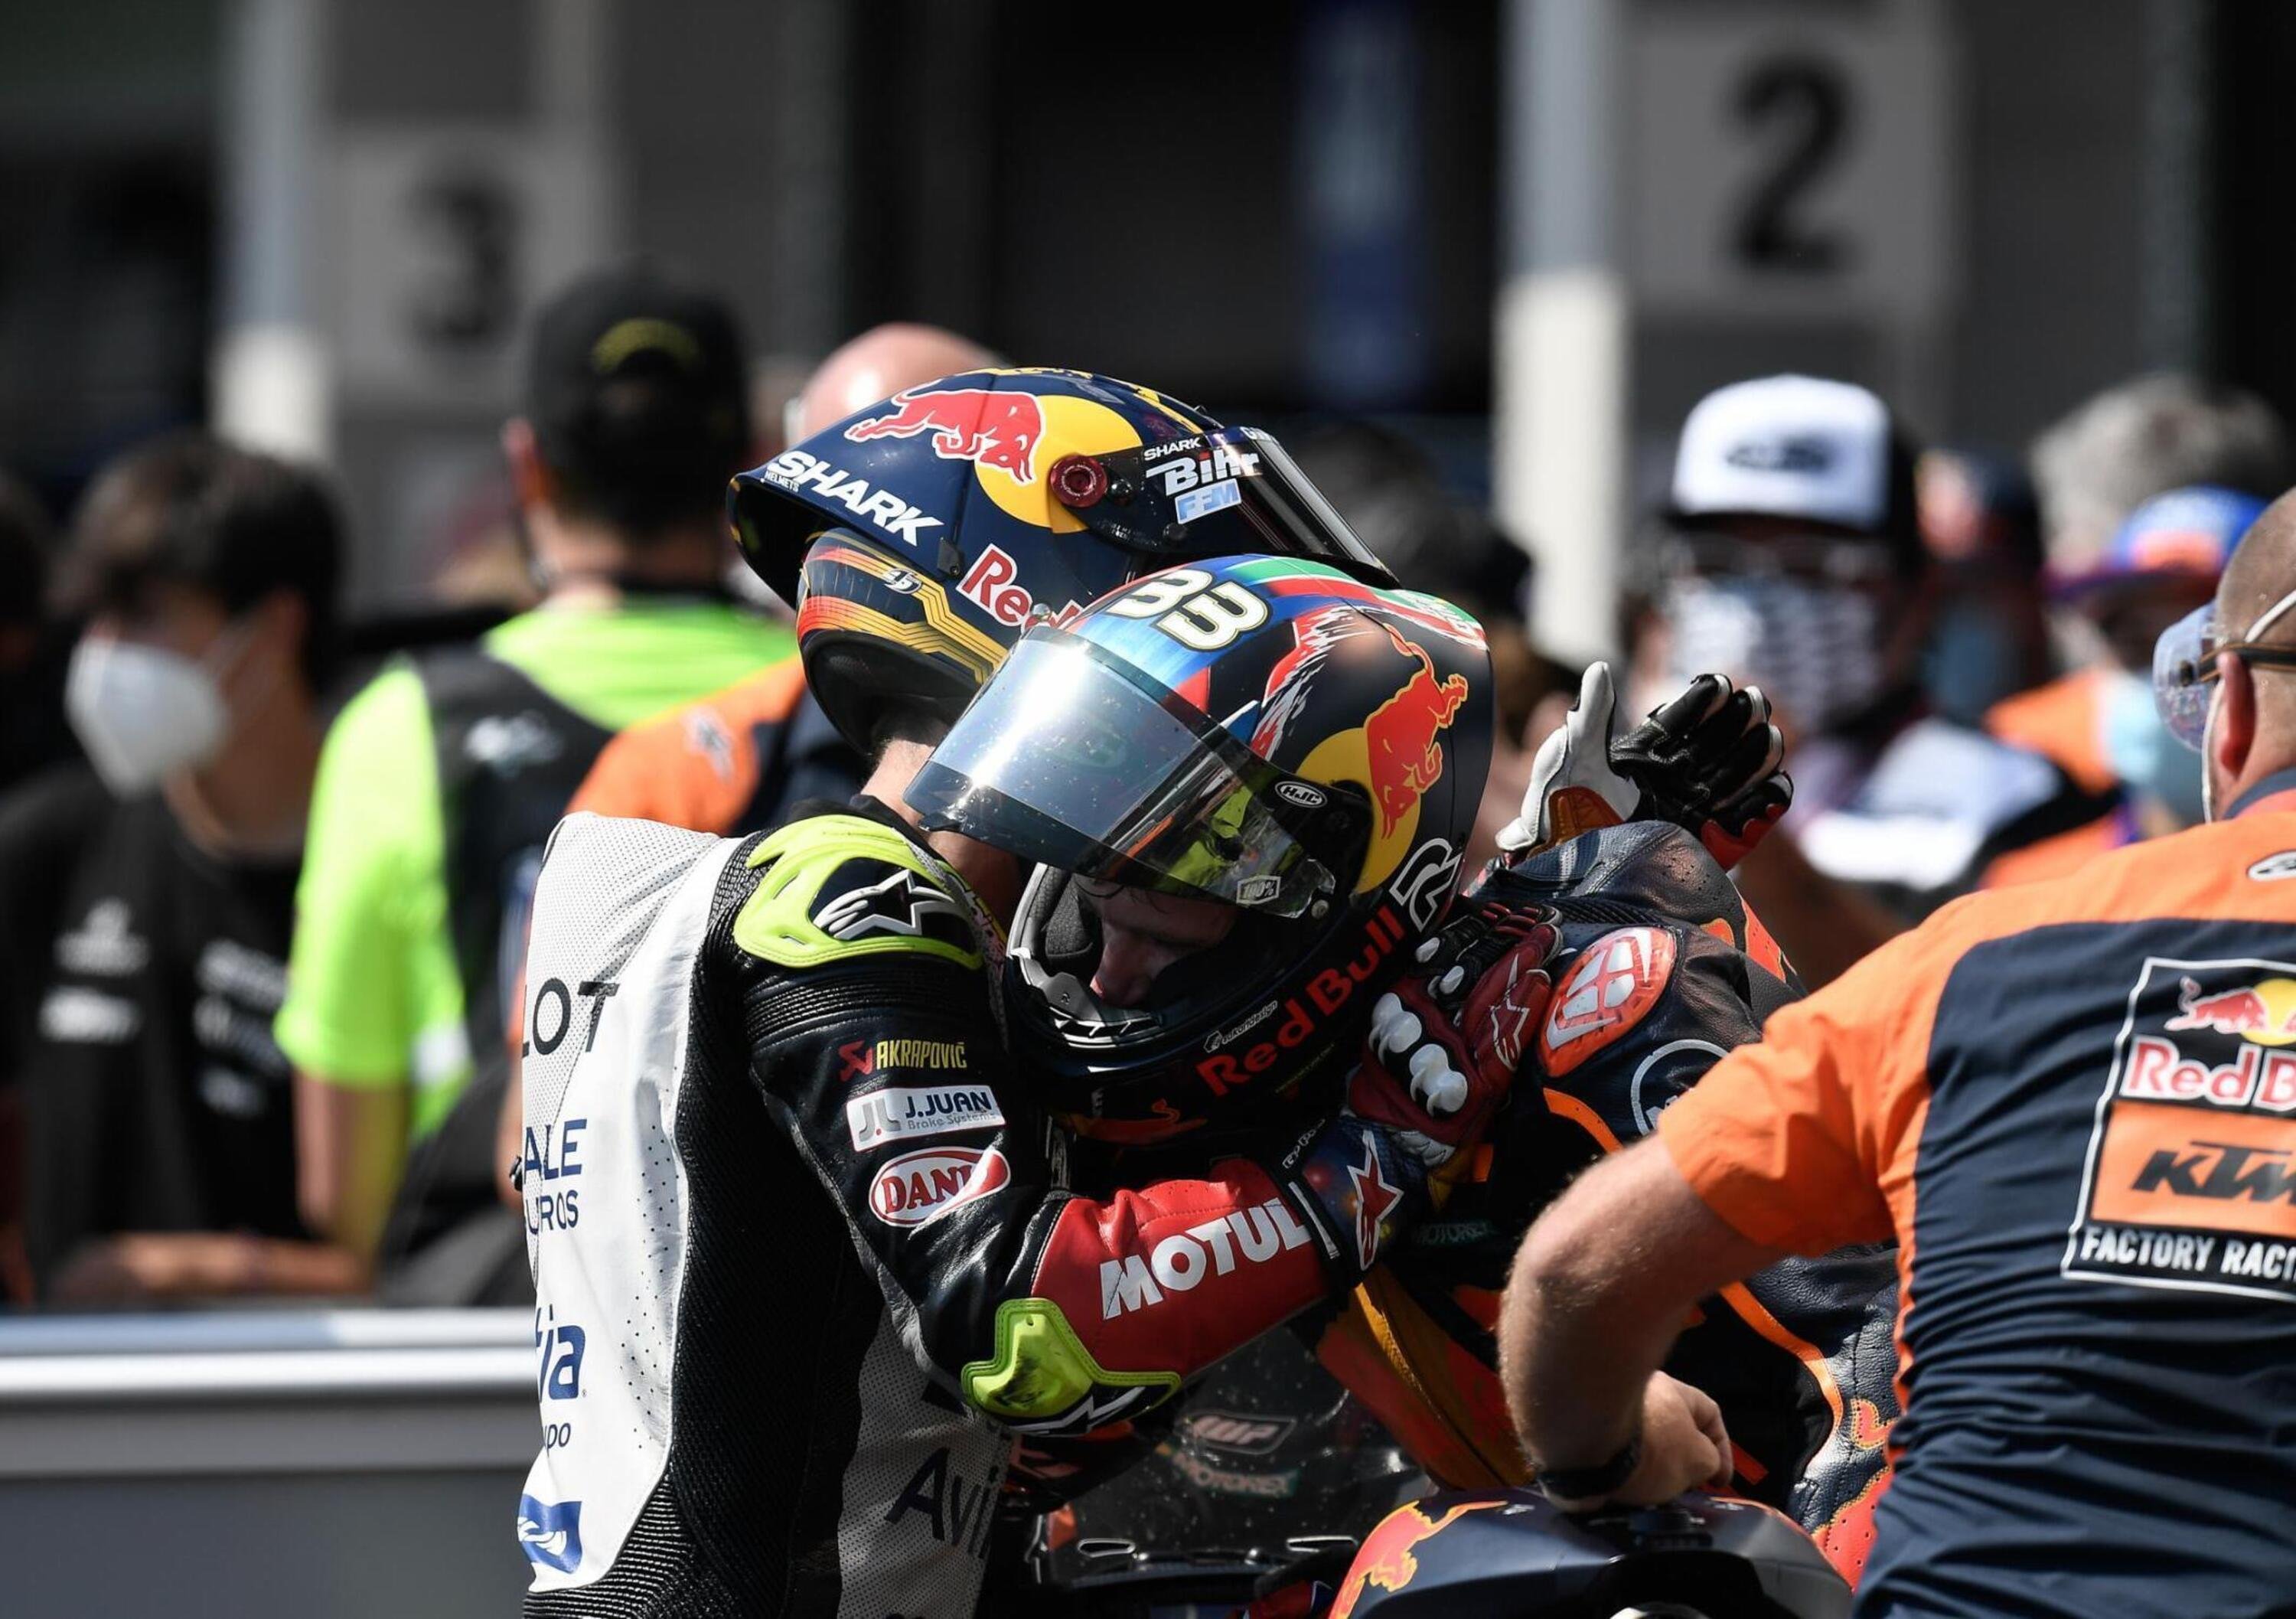 MotoGP 2020. Spunti, considerazioni e domande dopo il GP di Brno